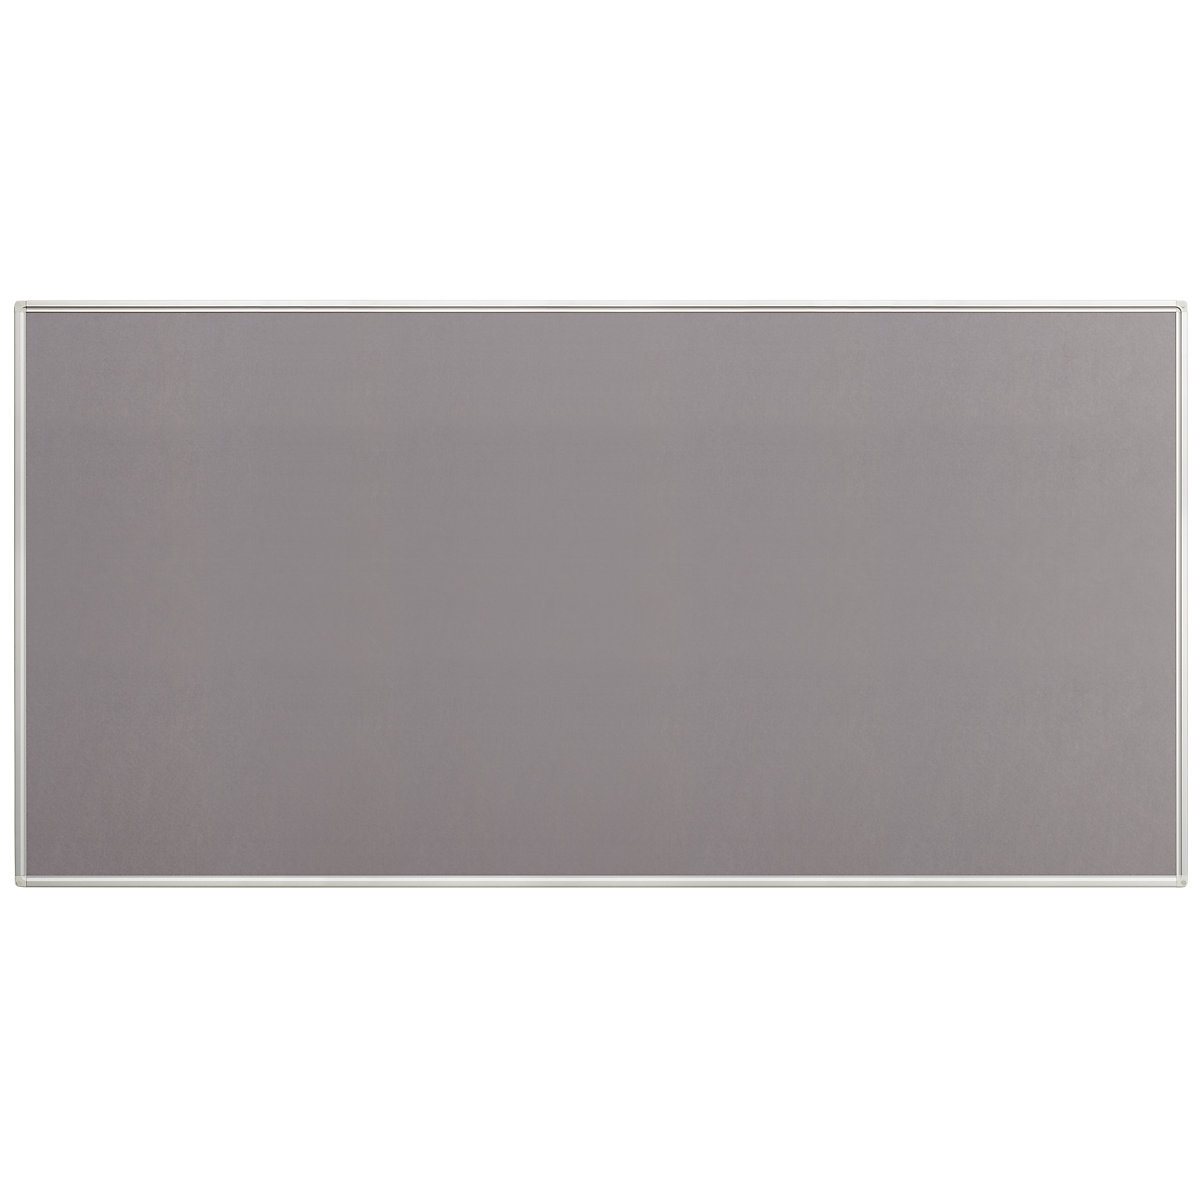 Tableau pour épingles, feutre, gris, l x h 2000 x 1000 mm-3